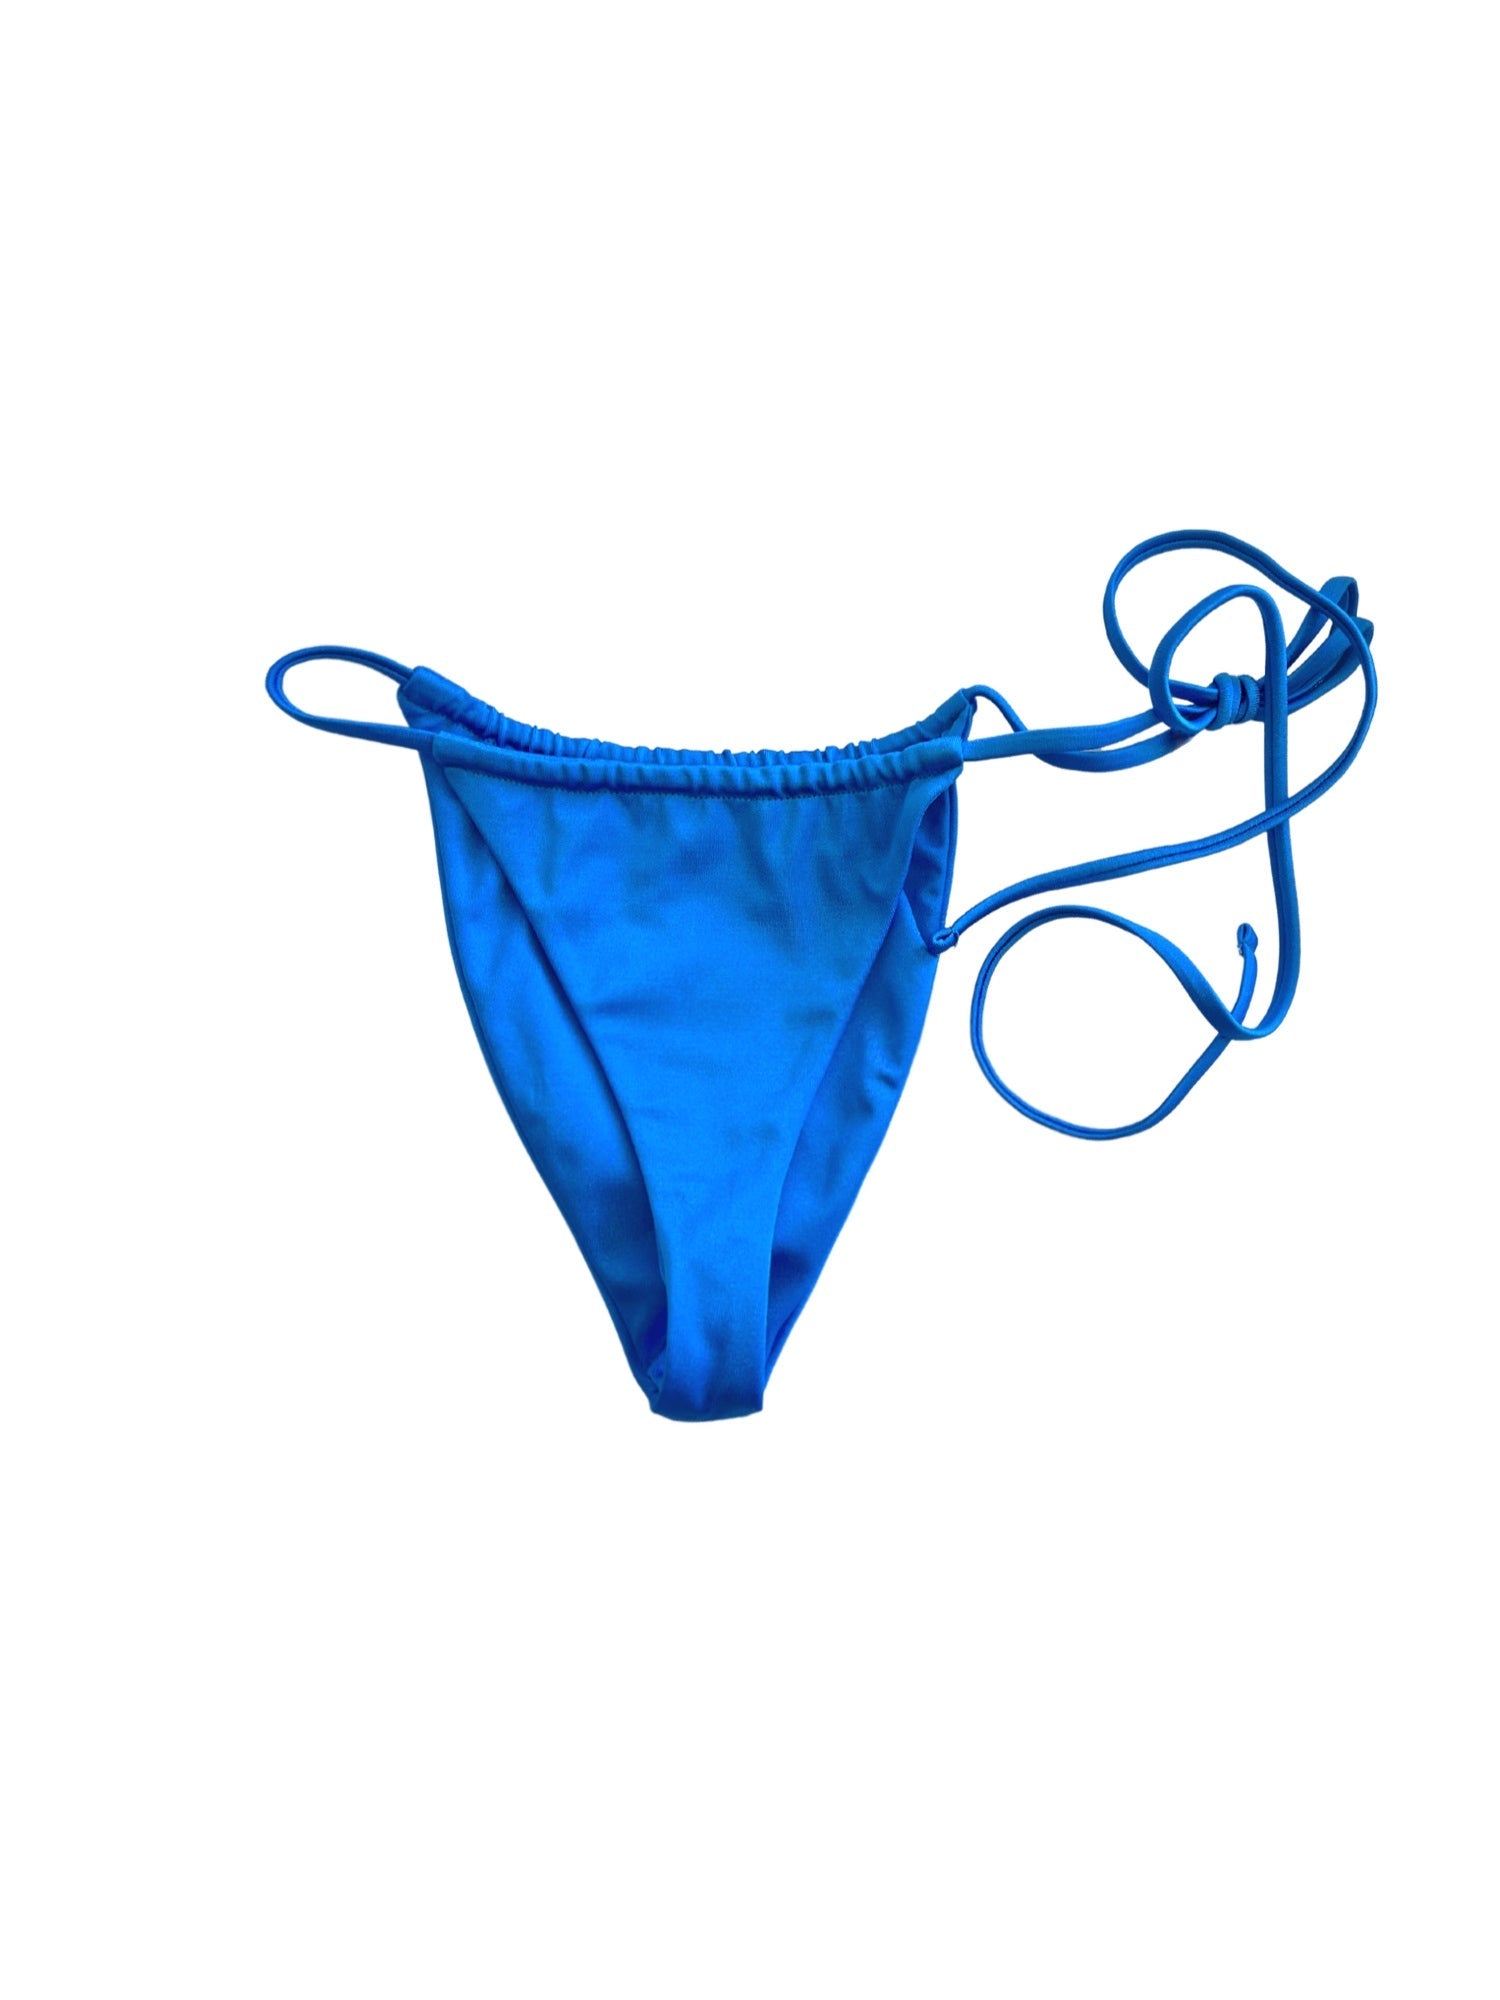 Azure bikini bottom - Blanche Olia